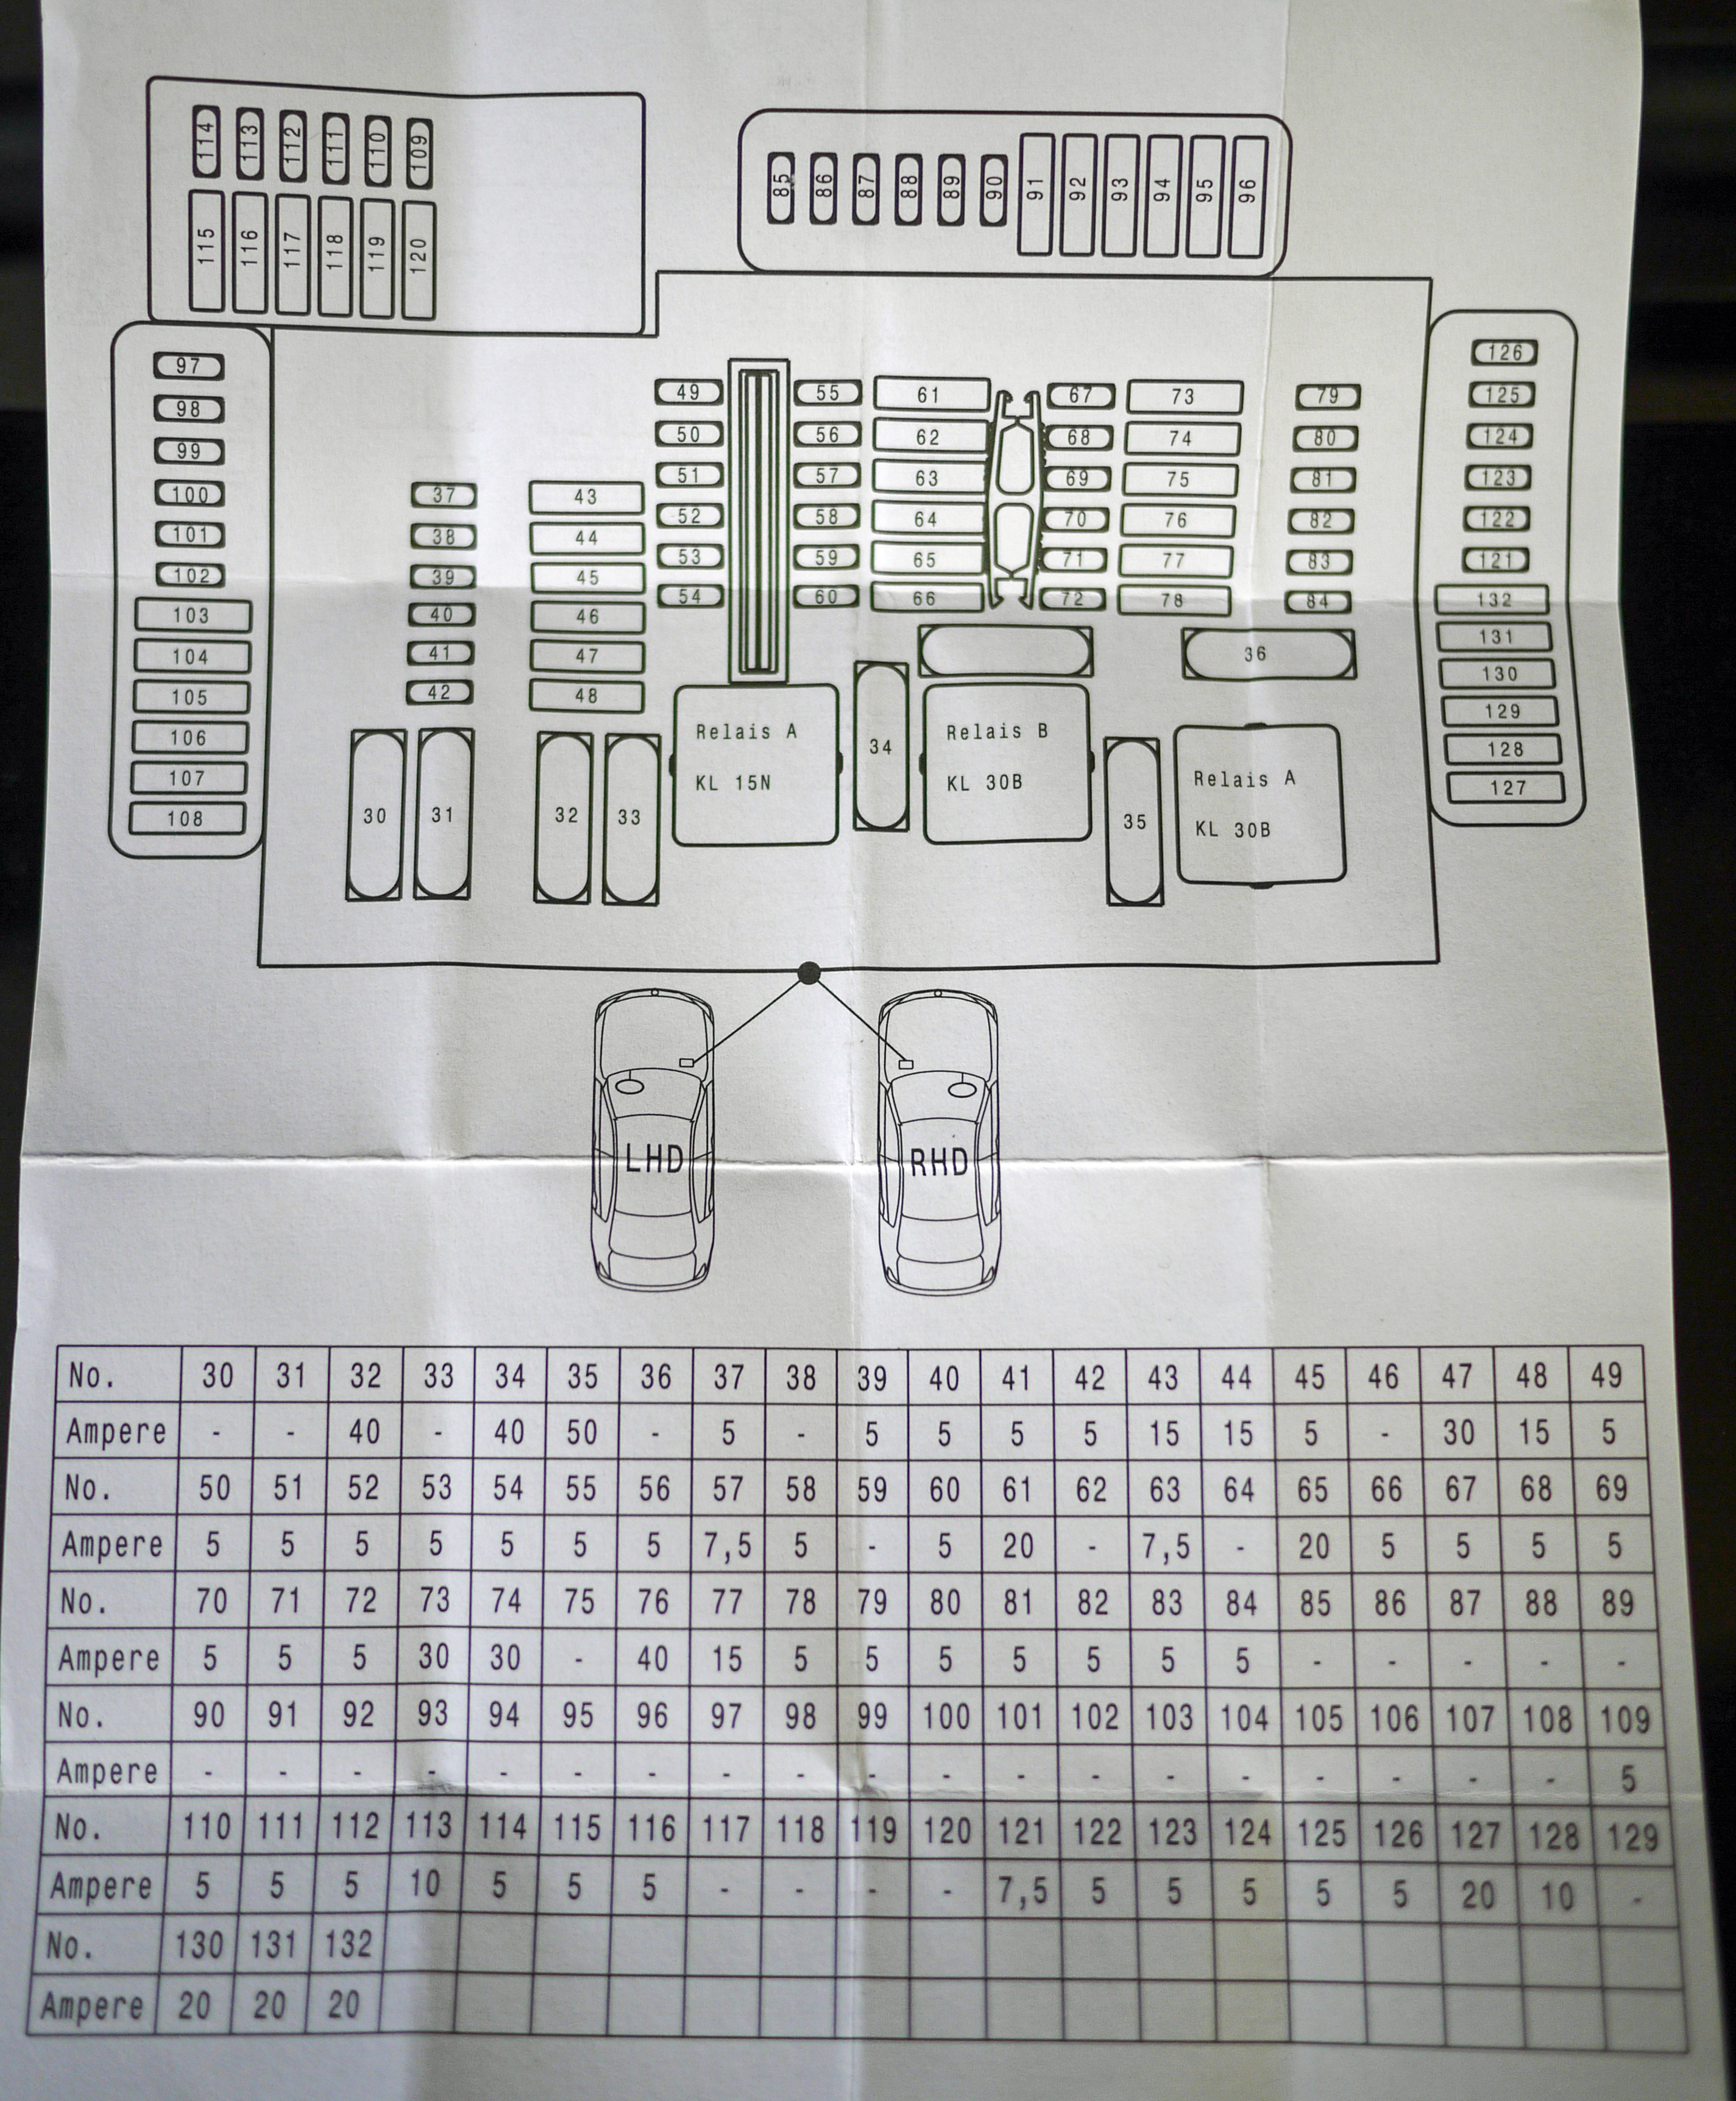 Nissan Leaf Fuse Box Diagram - Wiring Diagram Schemas